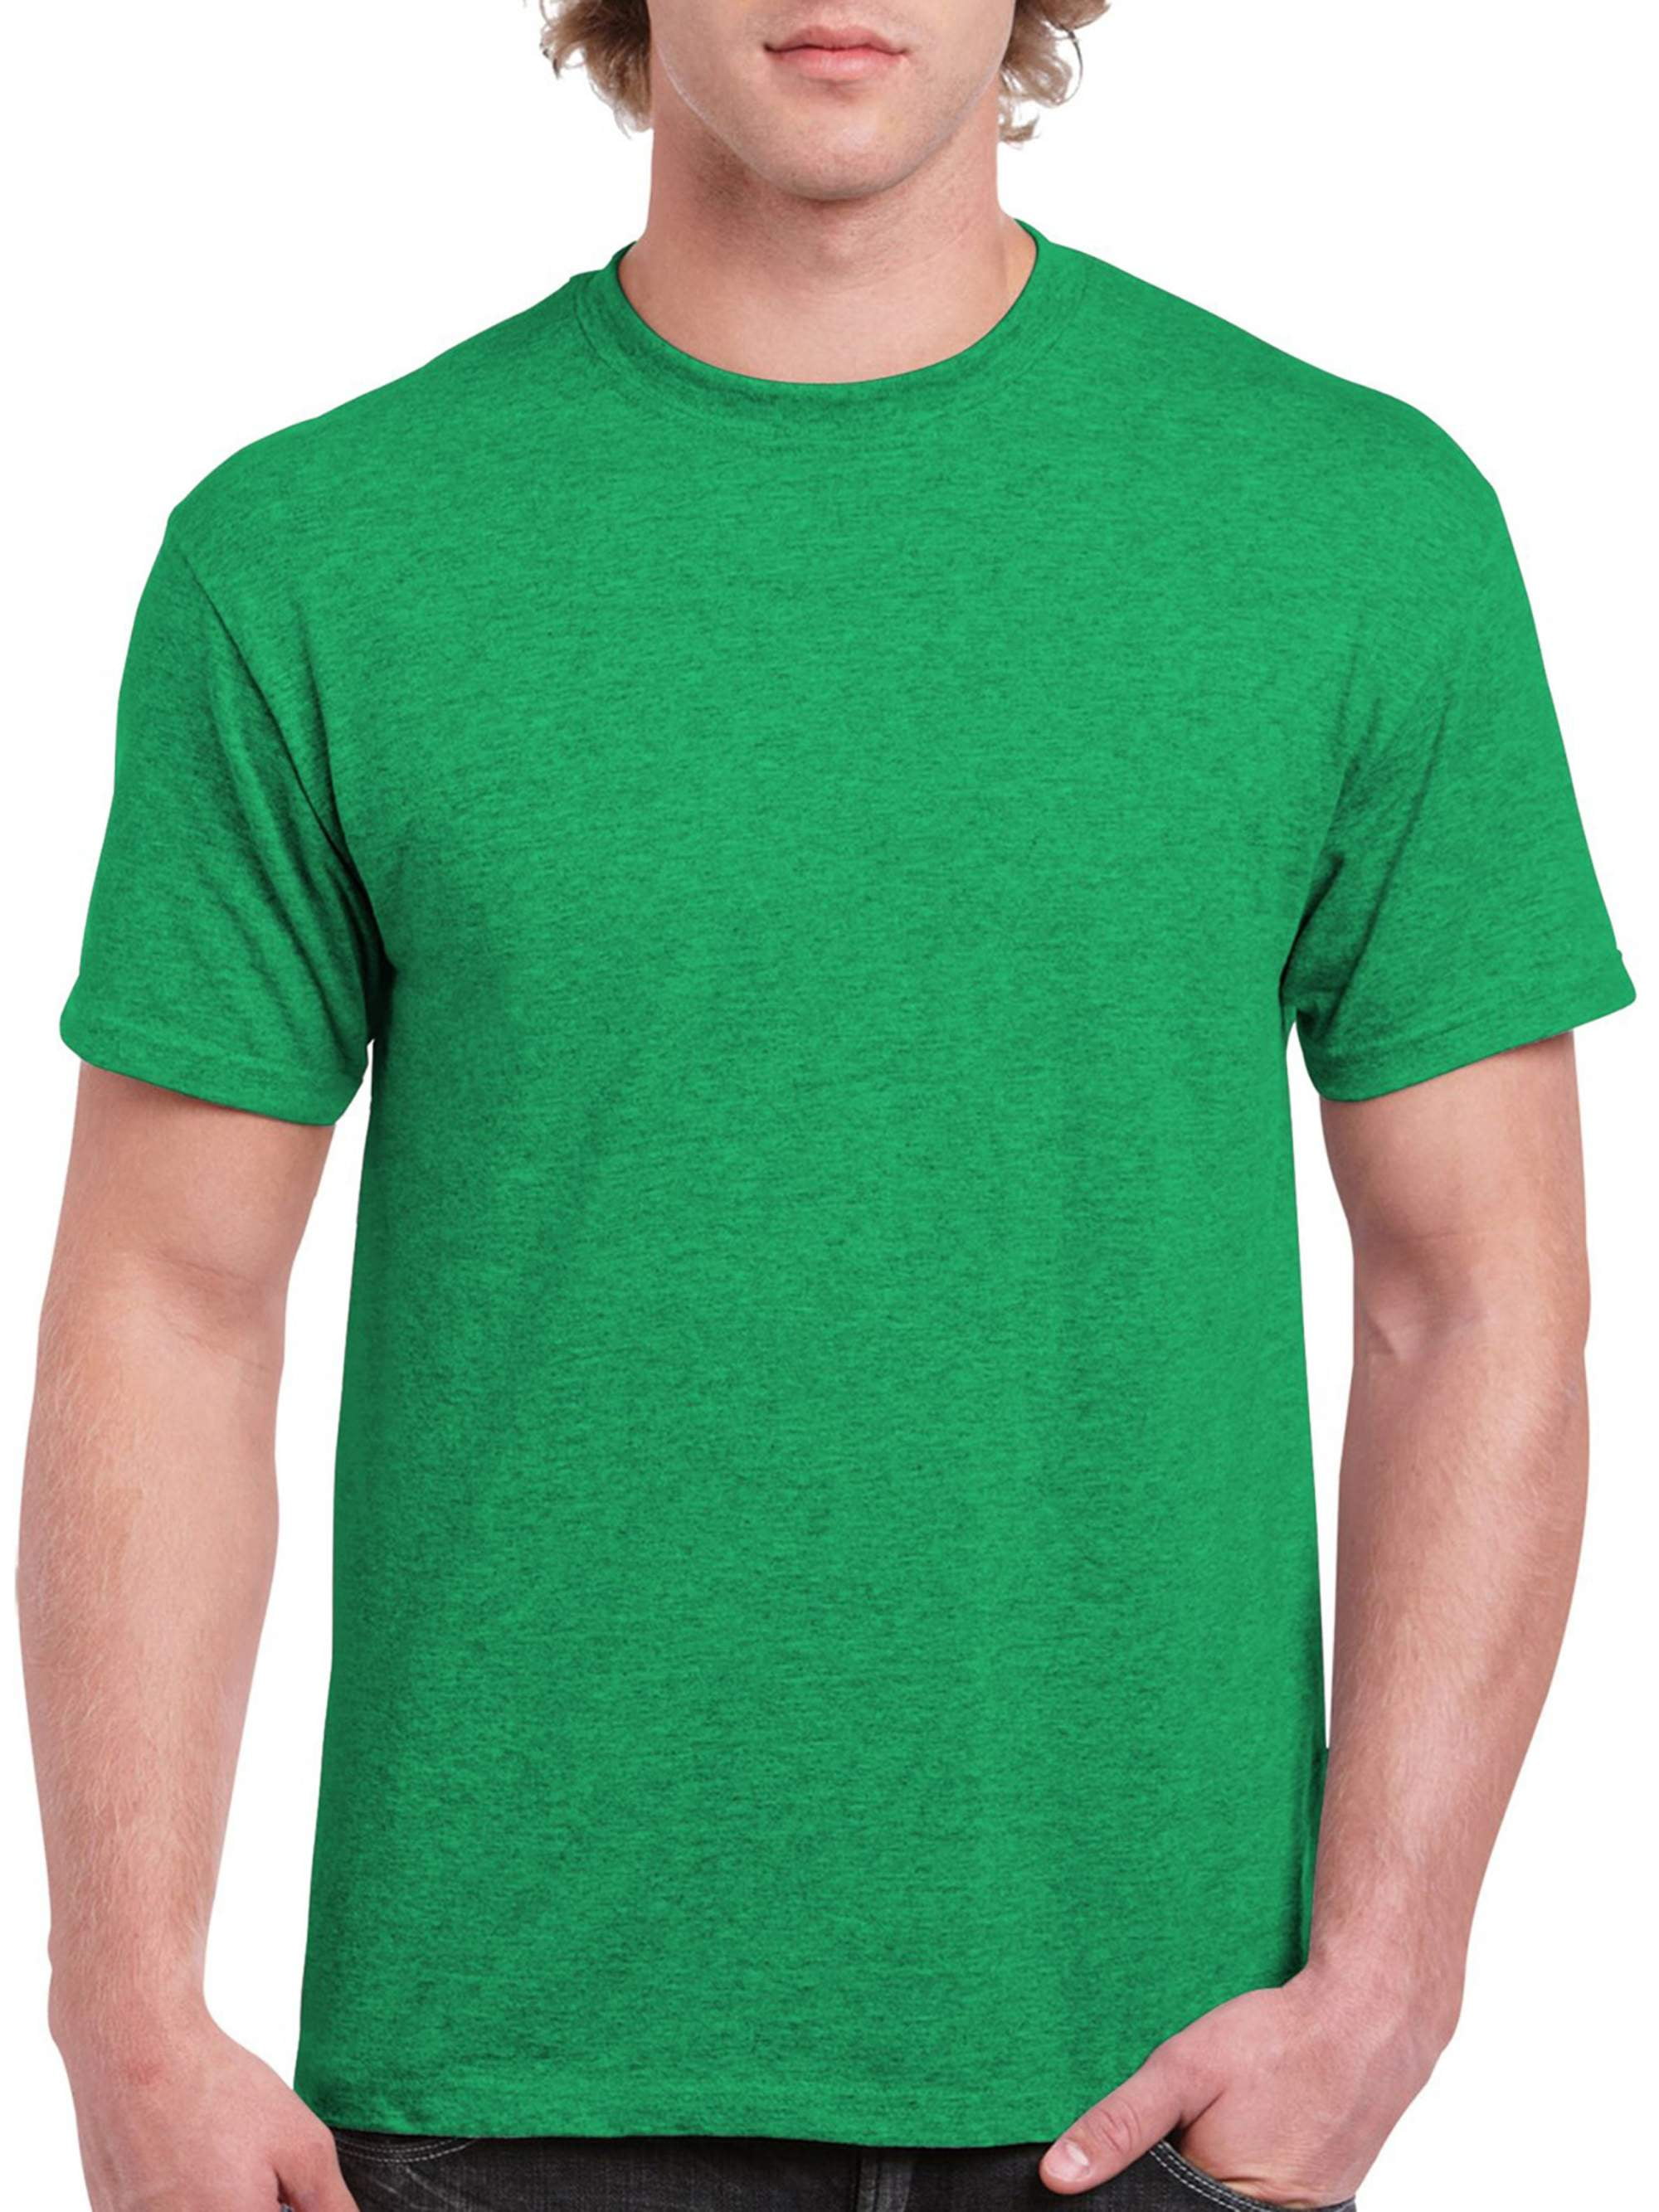 Gildan Mens Classic Short Sleeve T-shirt - Walmart.com